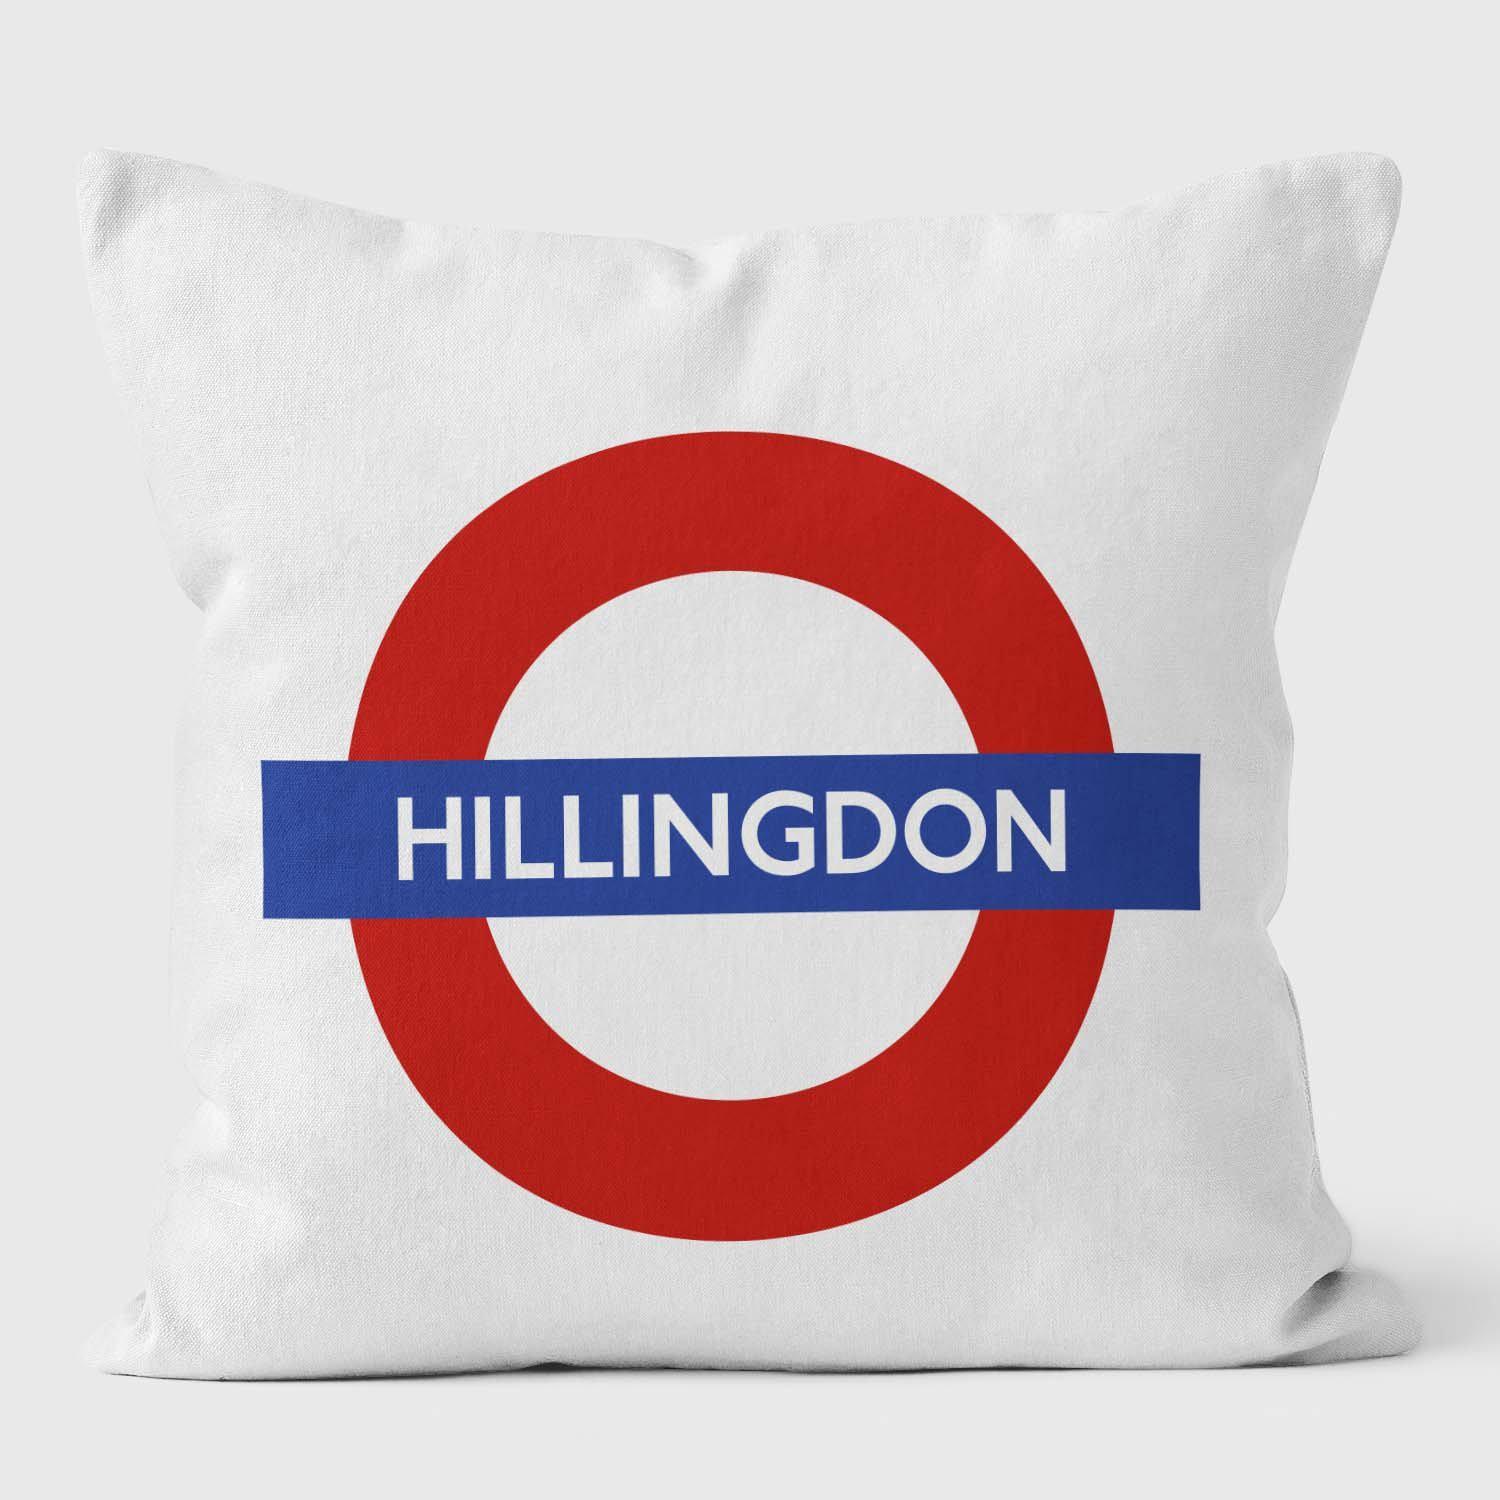 Hillingdon London Underground Tube Station Roundel Cushion - Handmade Cushions UK - WeLoveCushions